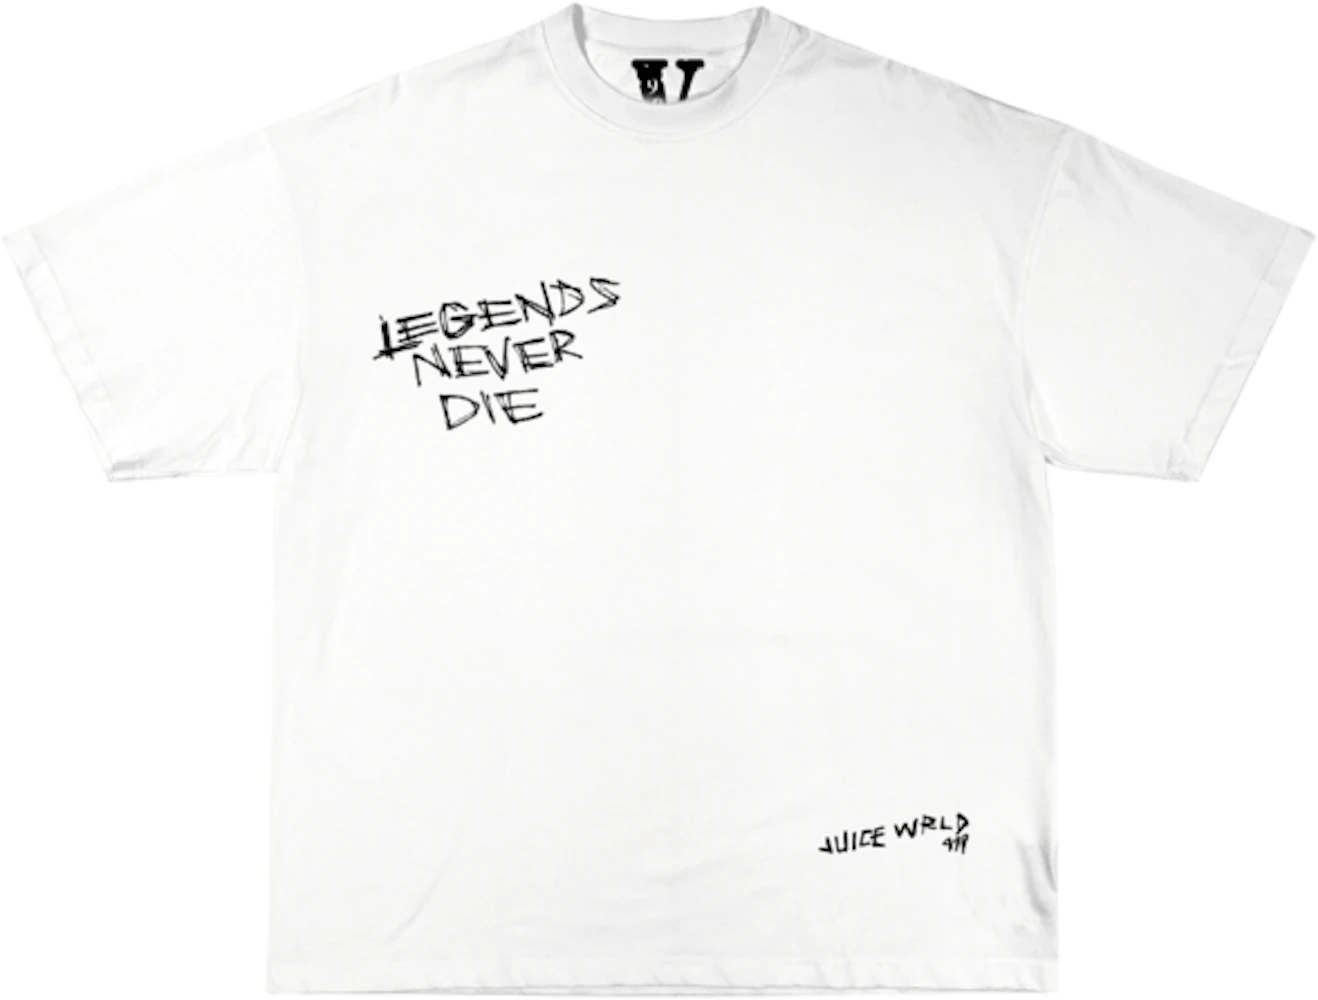 Legends Never Die V.1 - Legend of Zelda T-Shirt - The Shirt List